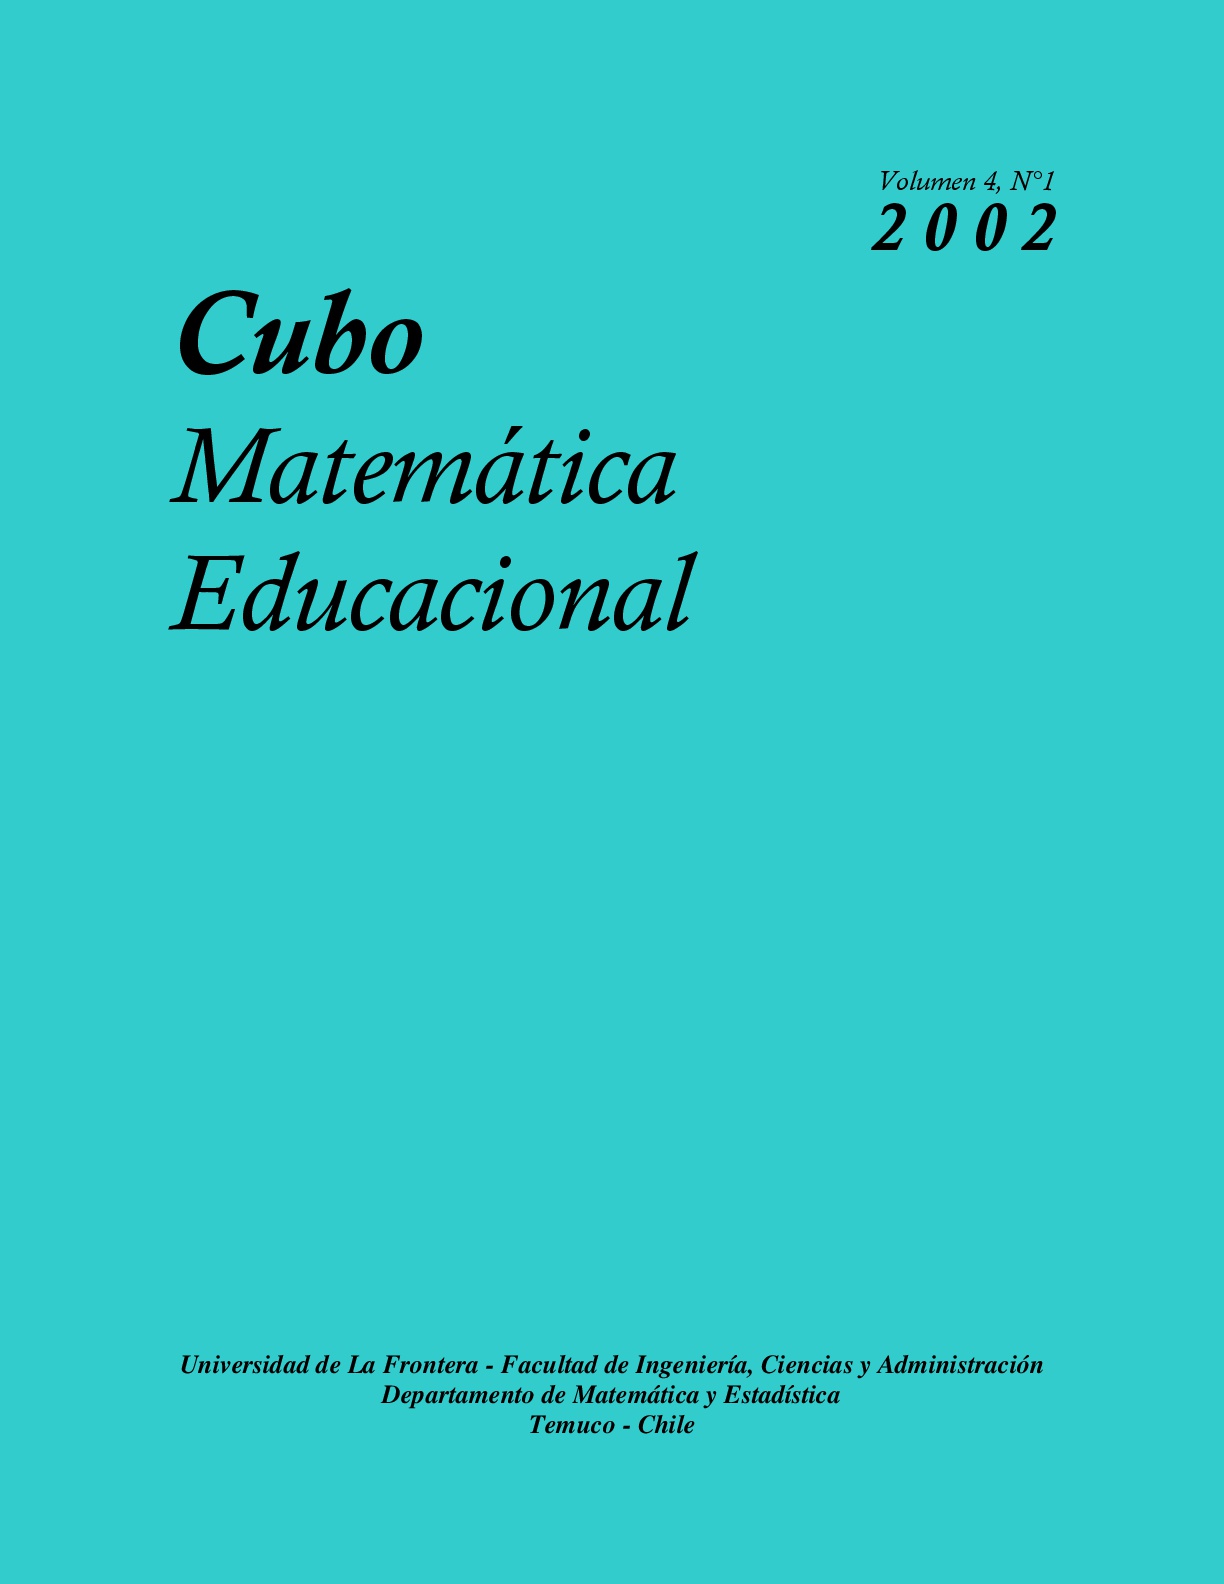 					View Vol. 4 No. 1 (2002): CUBO, Matemática Educacional
				